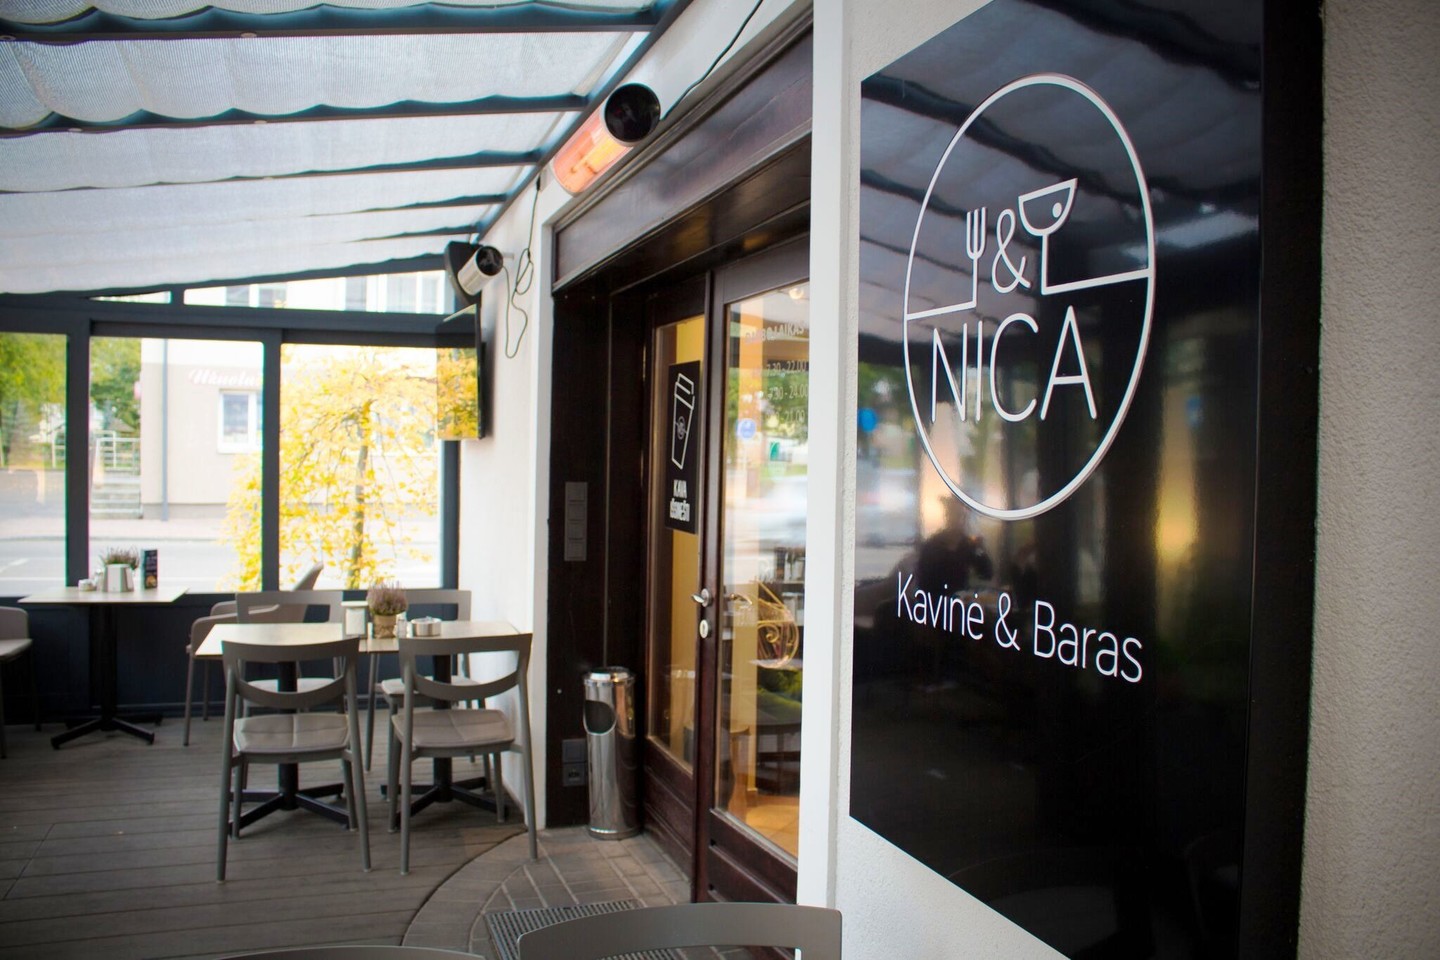  Marijampolėje, įsikūrusi kavinė-baras „Nica“ – viena iš dažniausiai rekomenduojamų kavinių Suvalkijos regione. 